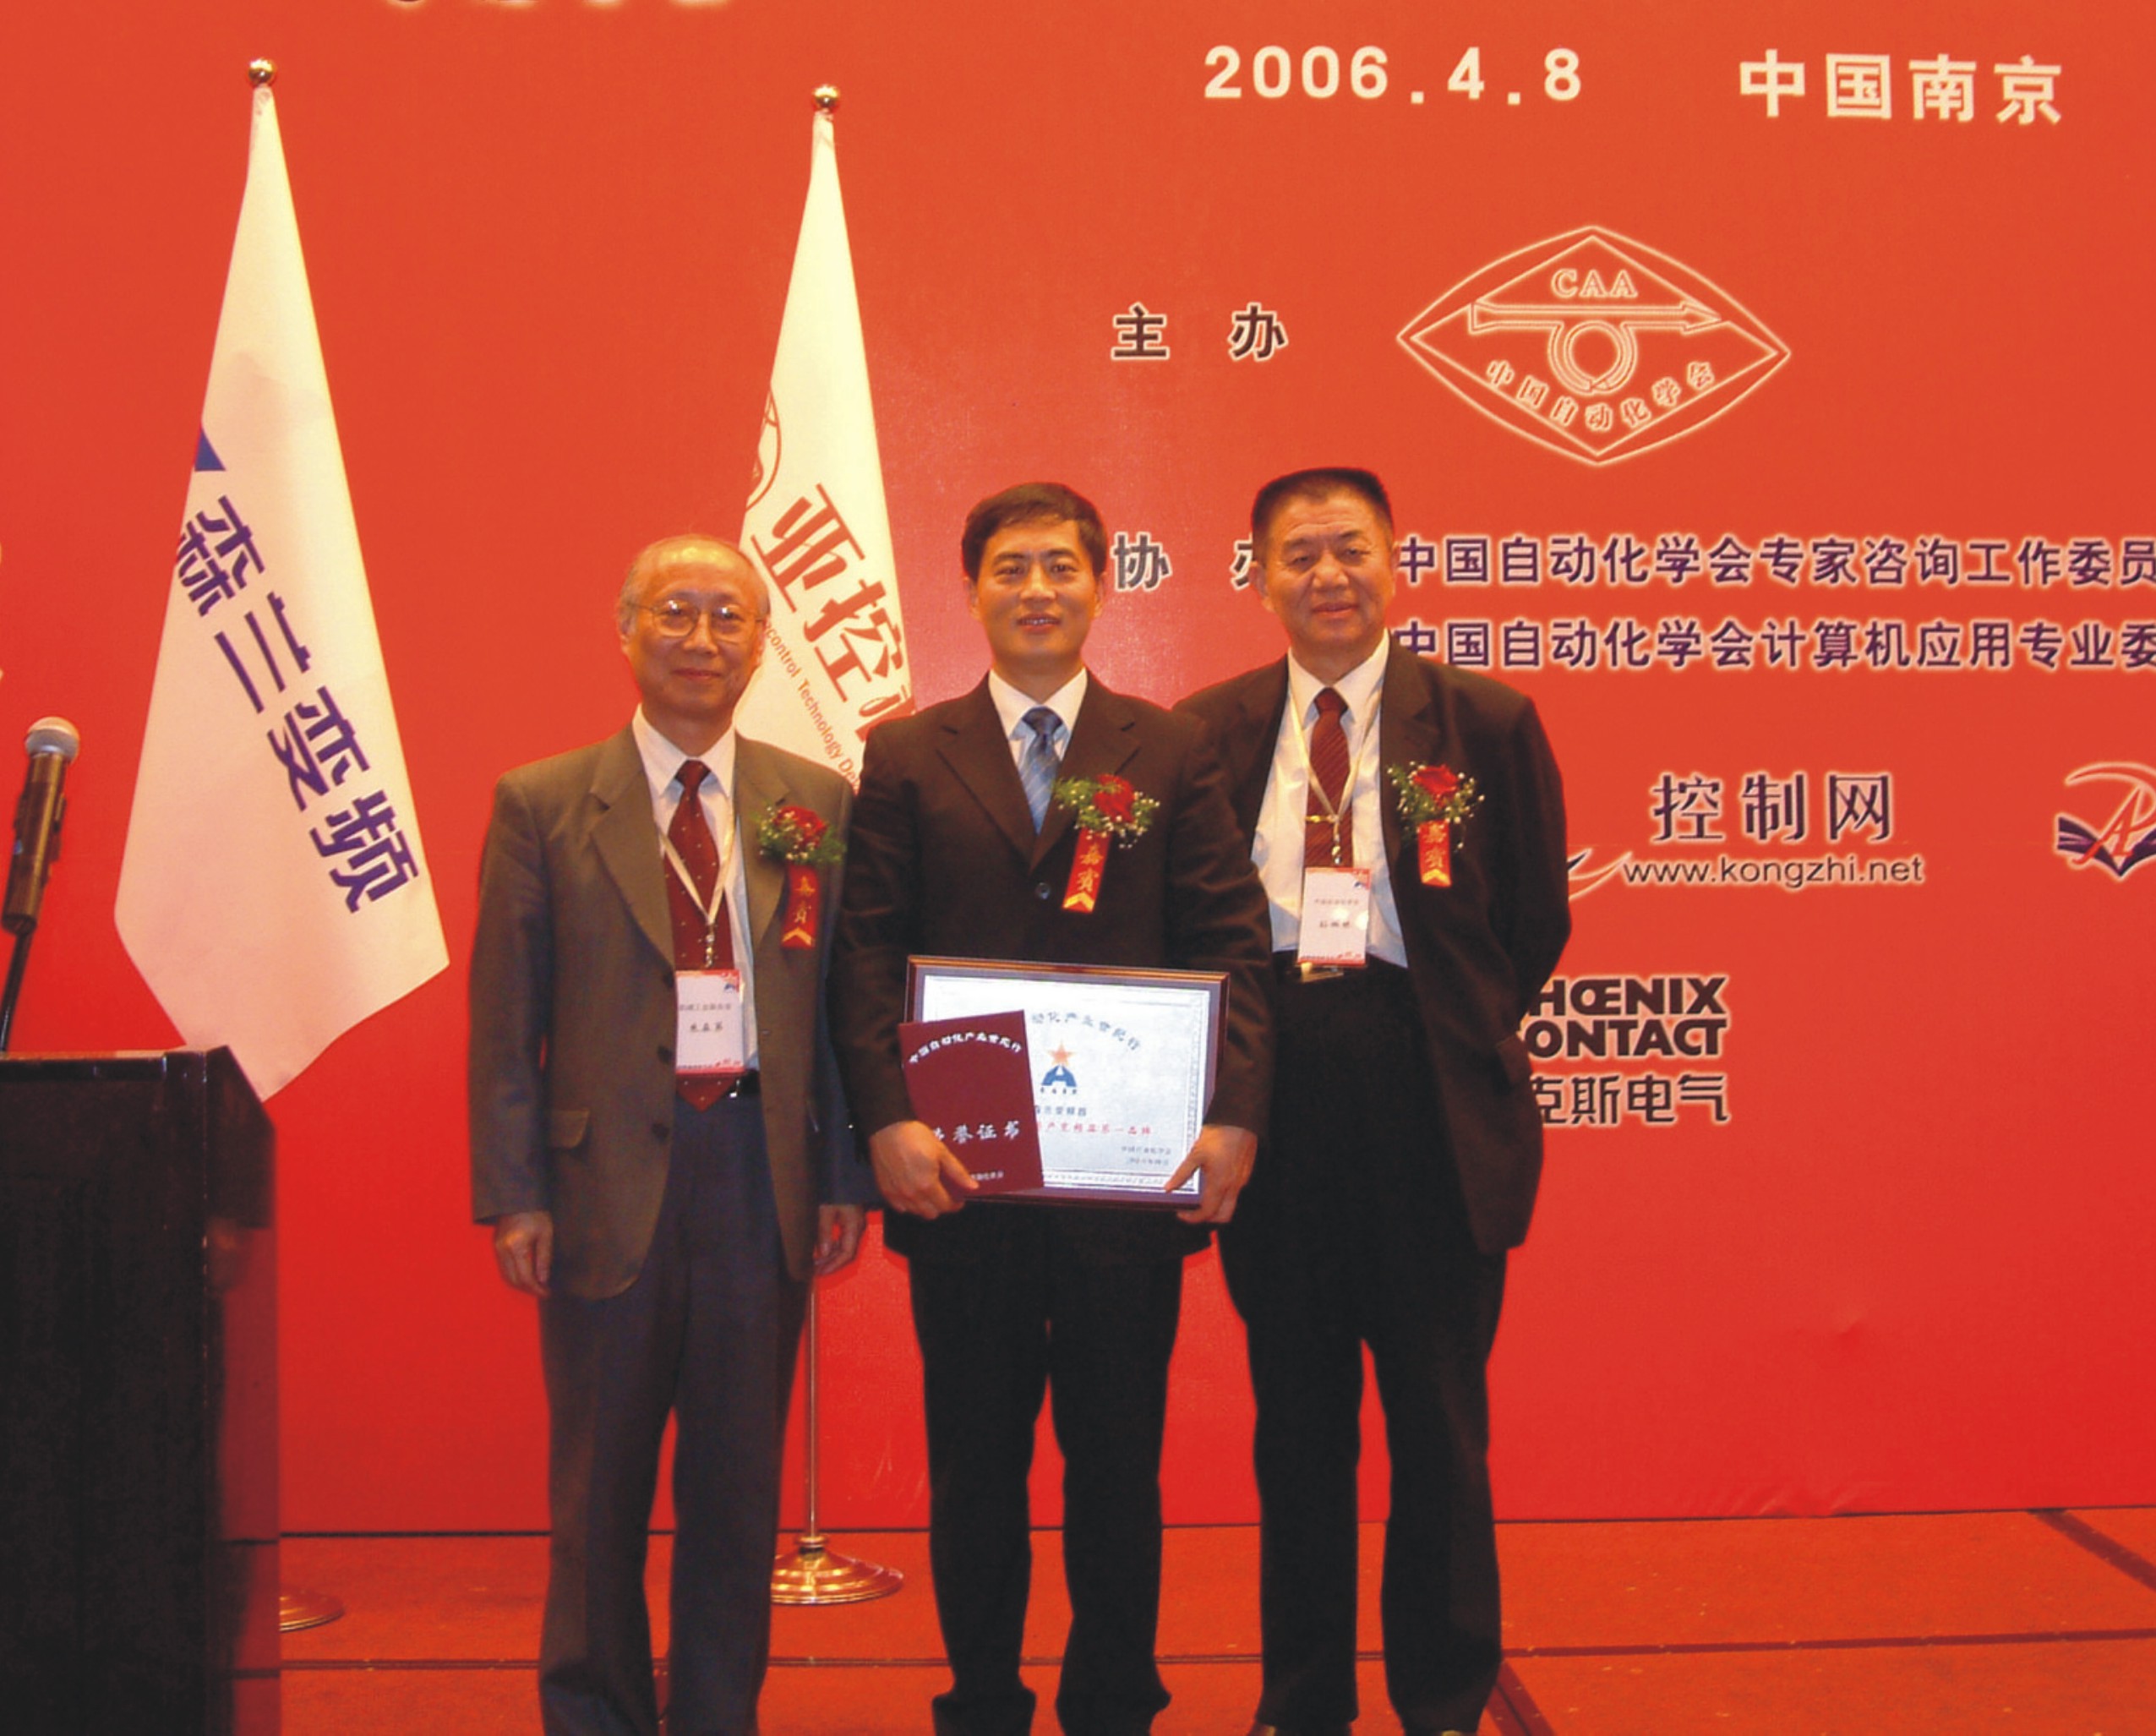 In 2005, Senlan won the “Best Domestic Inverter Brand” award